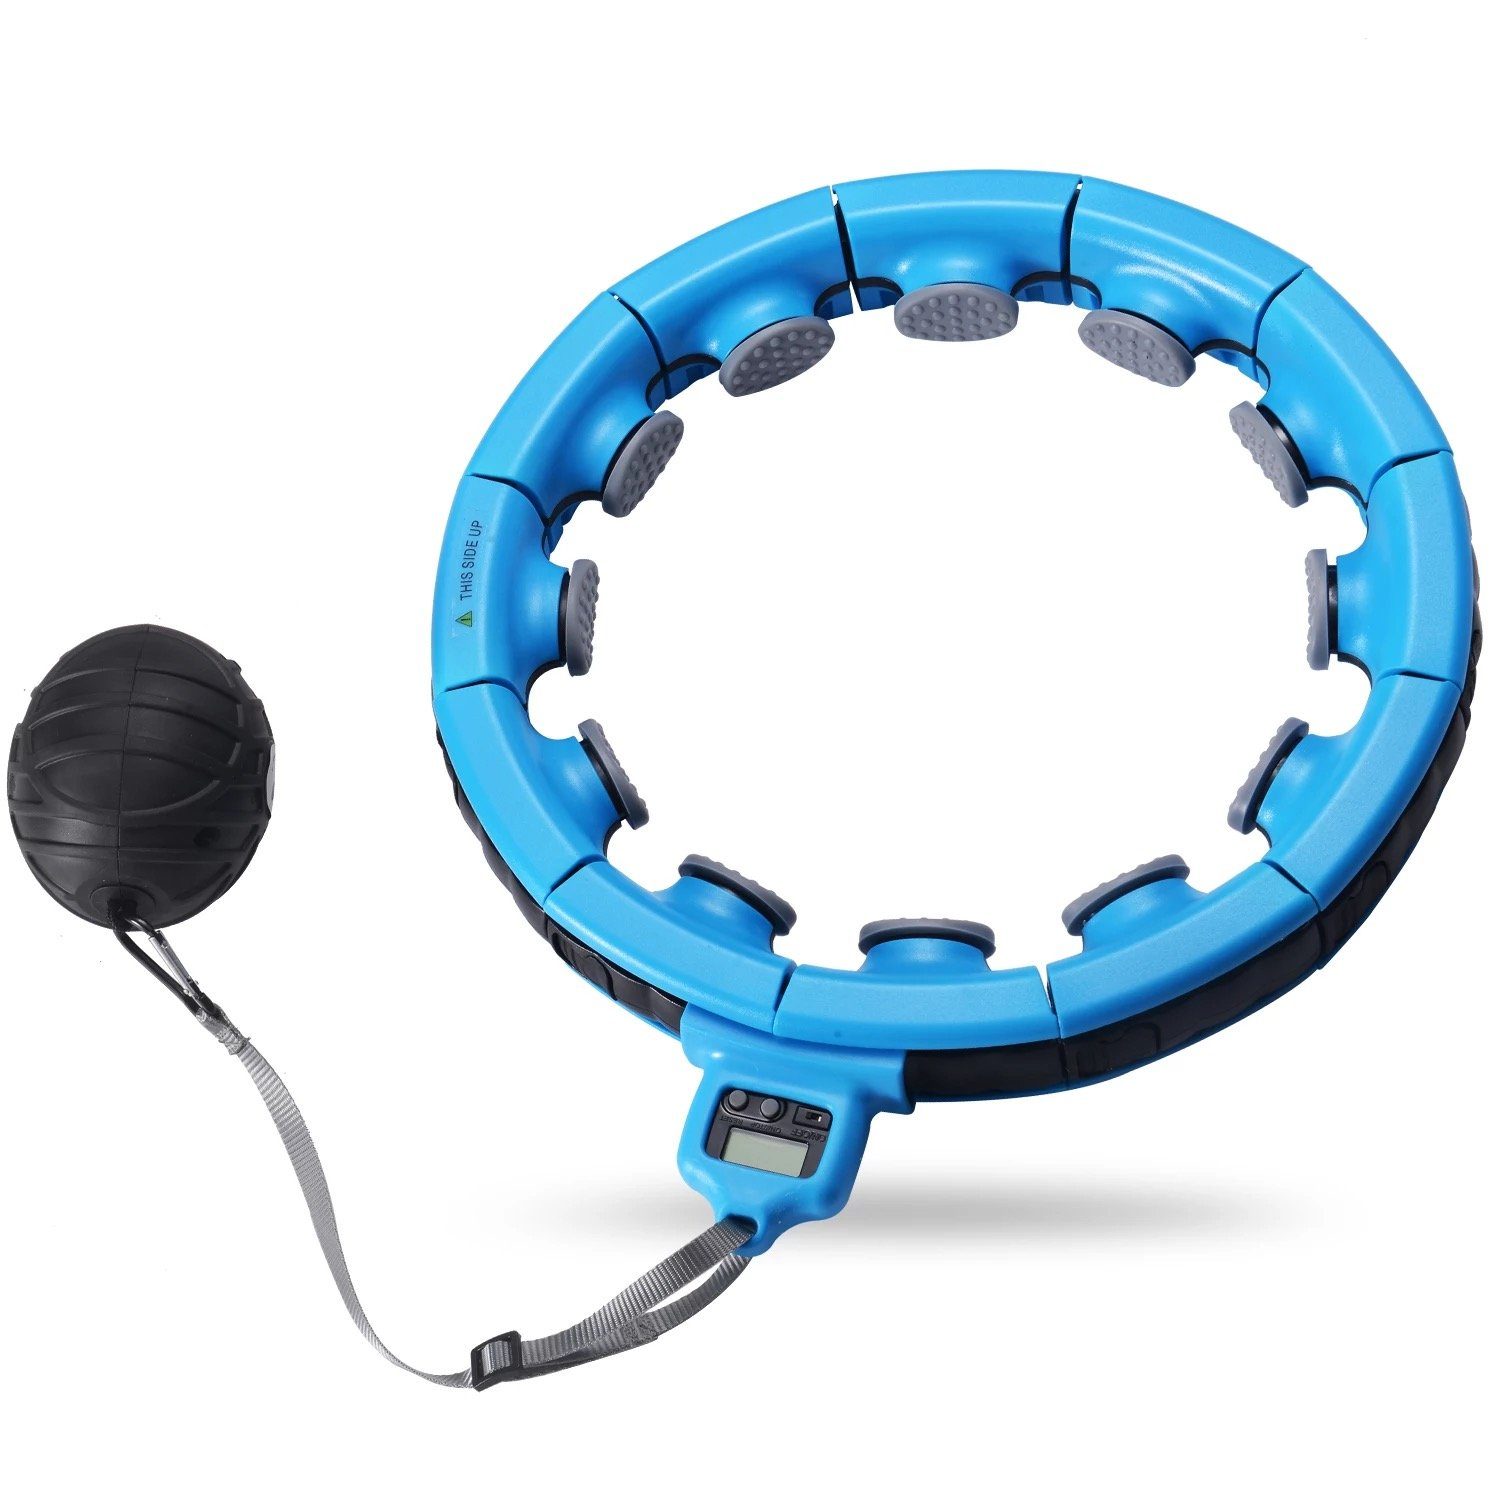 Technofit Hula-Hoop-Reifen Smart Hula Hoop Bauchtraining hoher Kalorienverbrauch, Individuell anpassbar und zum zusammenstecken blau